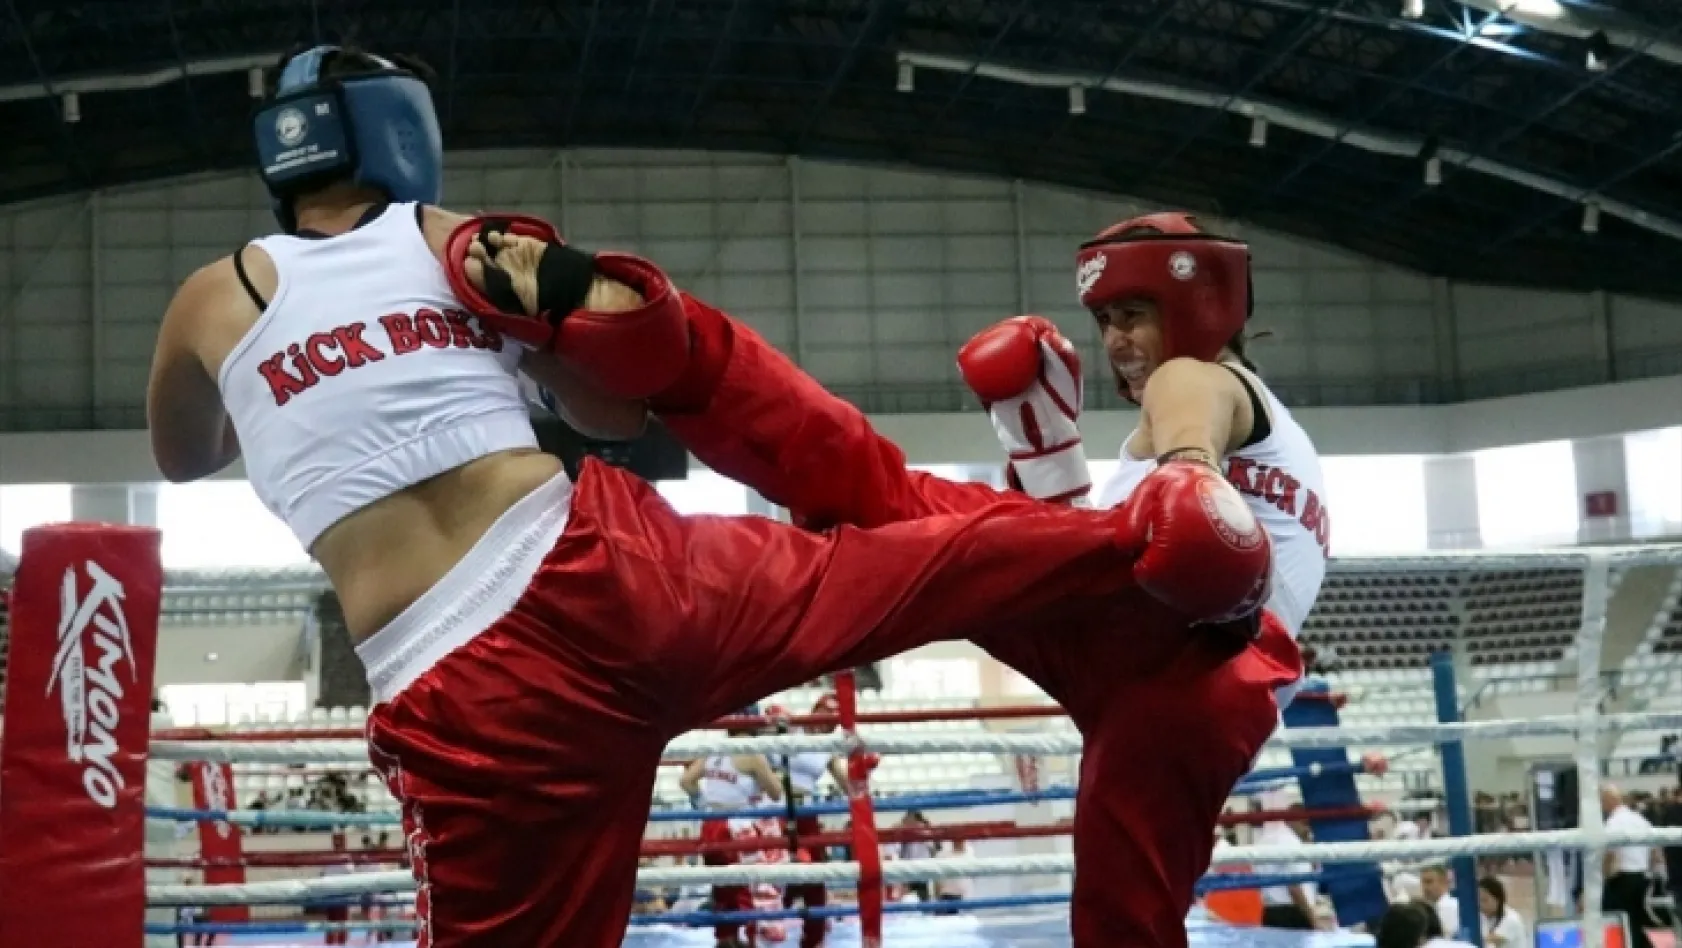 Kick boksa kadınların ilgisi artıyor